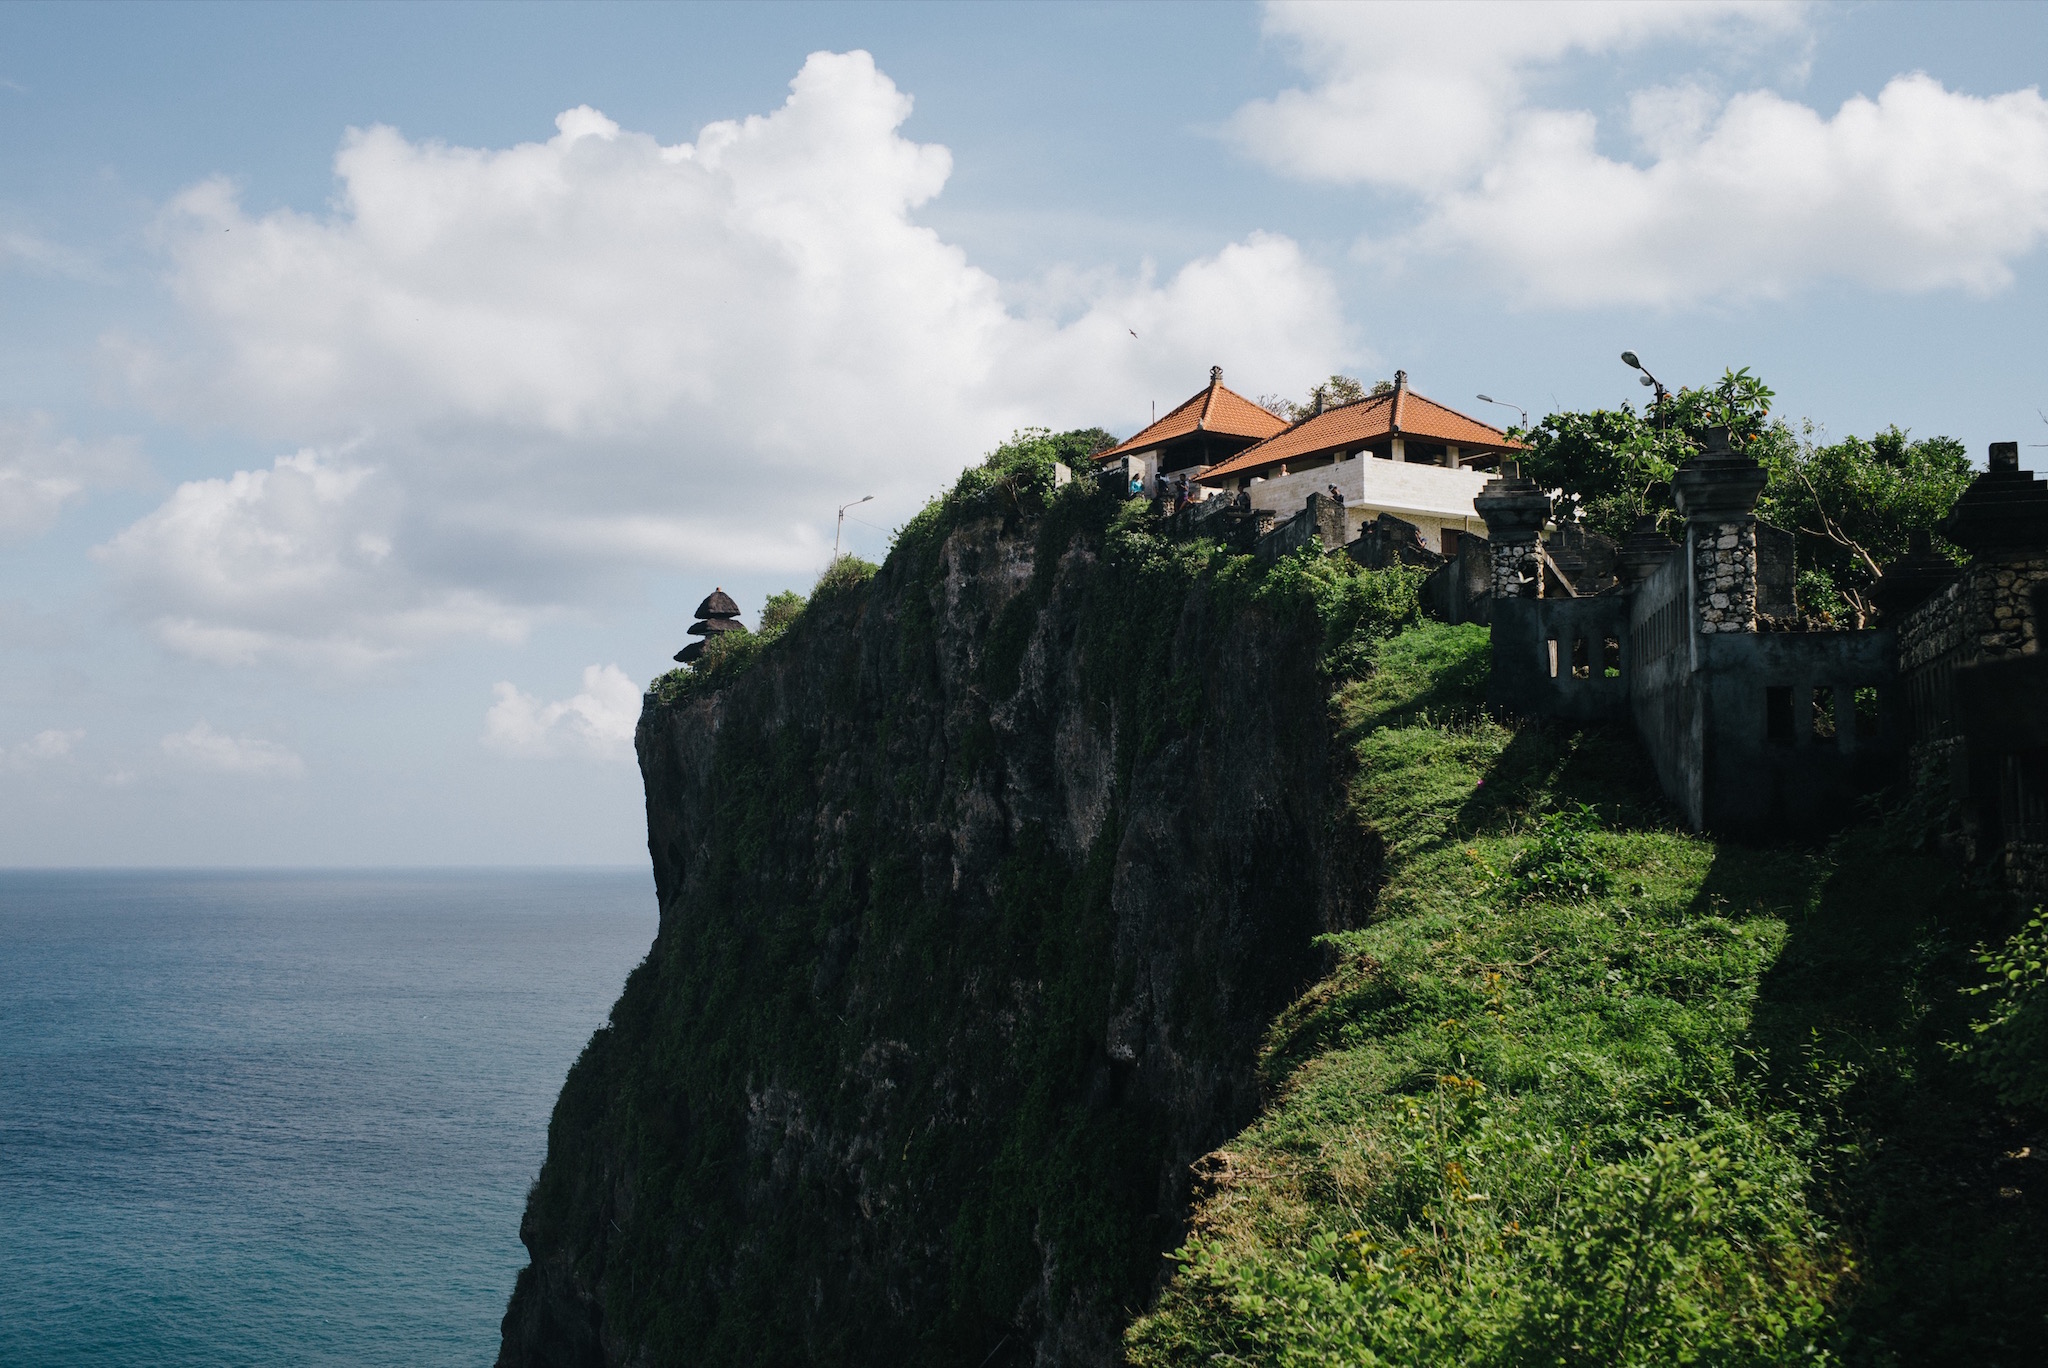  Uluwatu Temple along the cliff edge. 